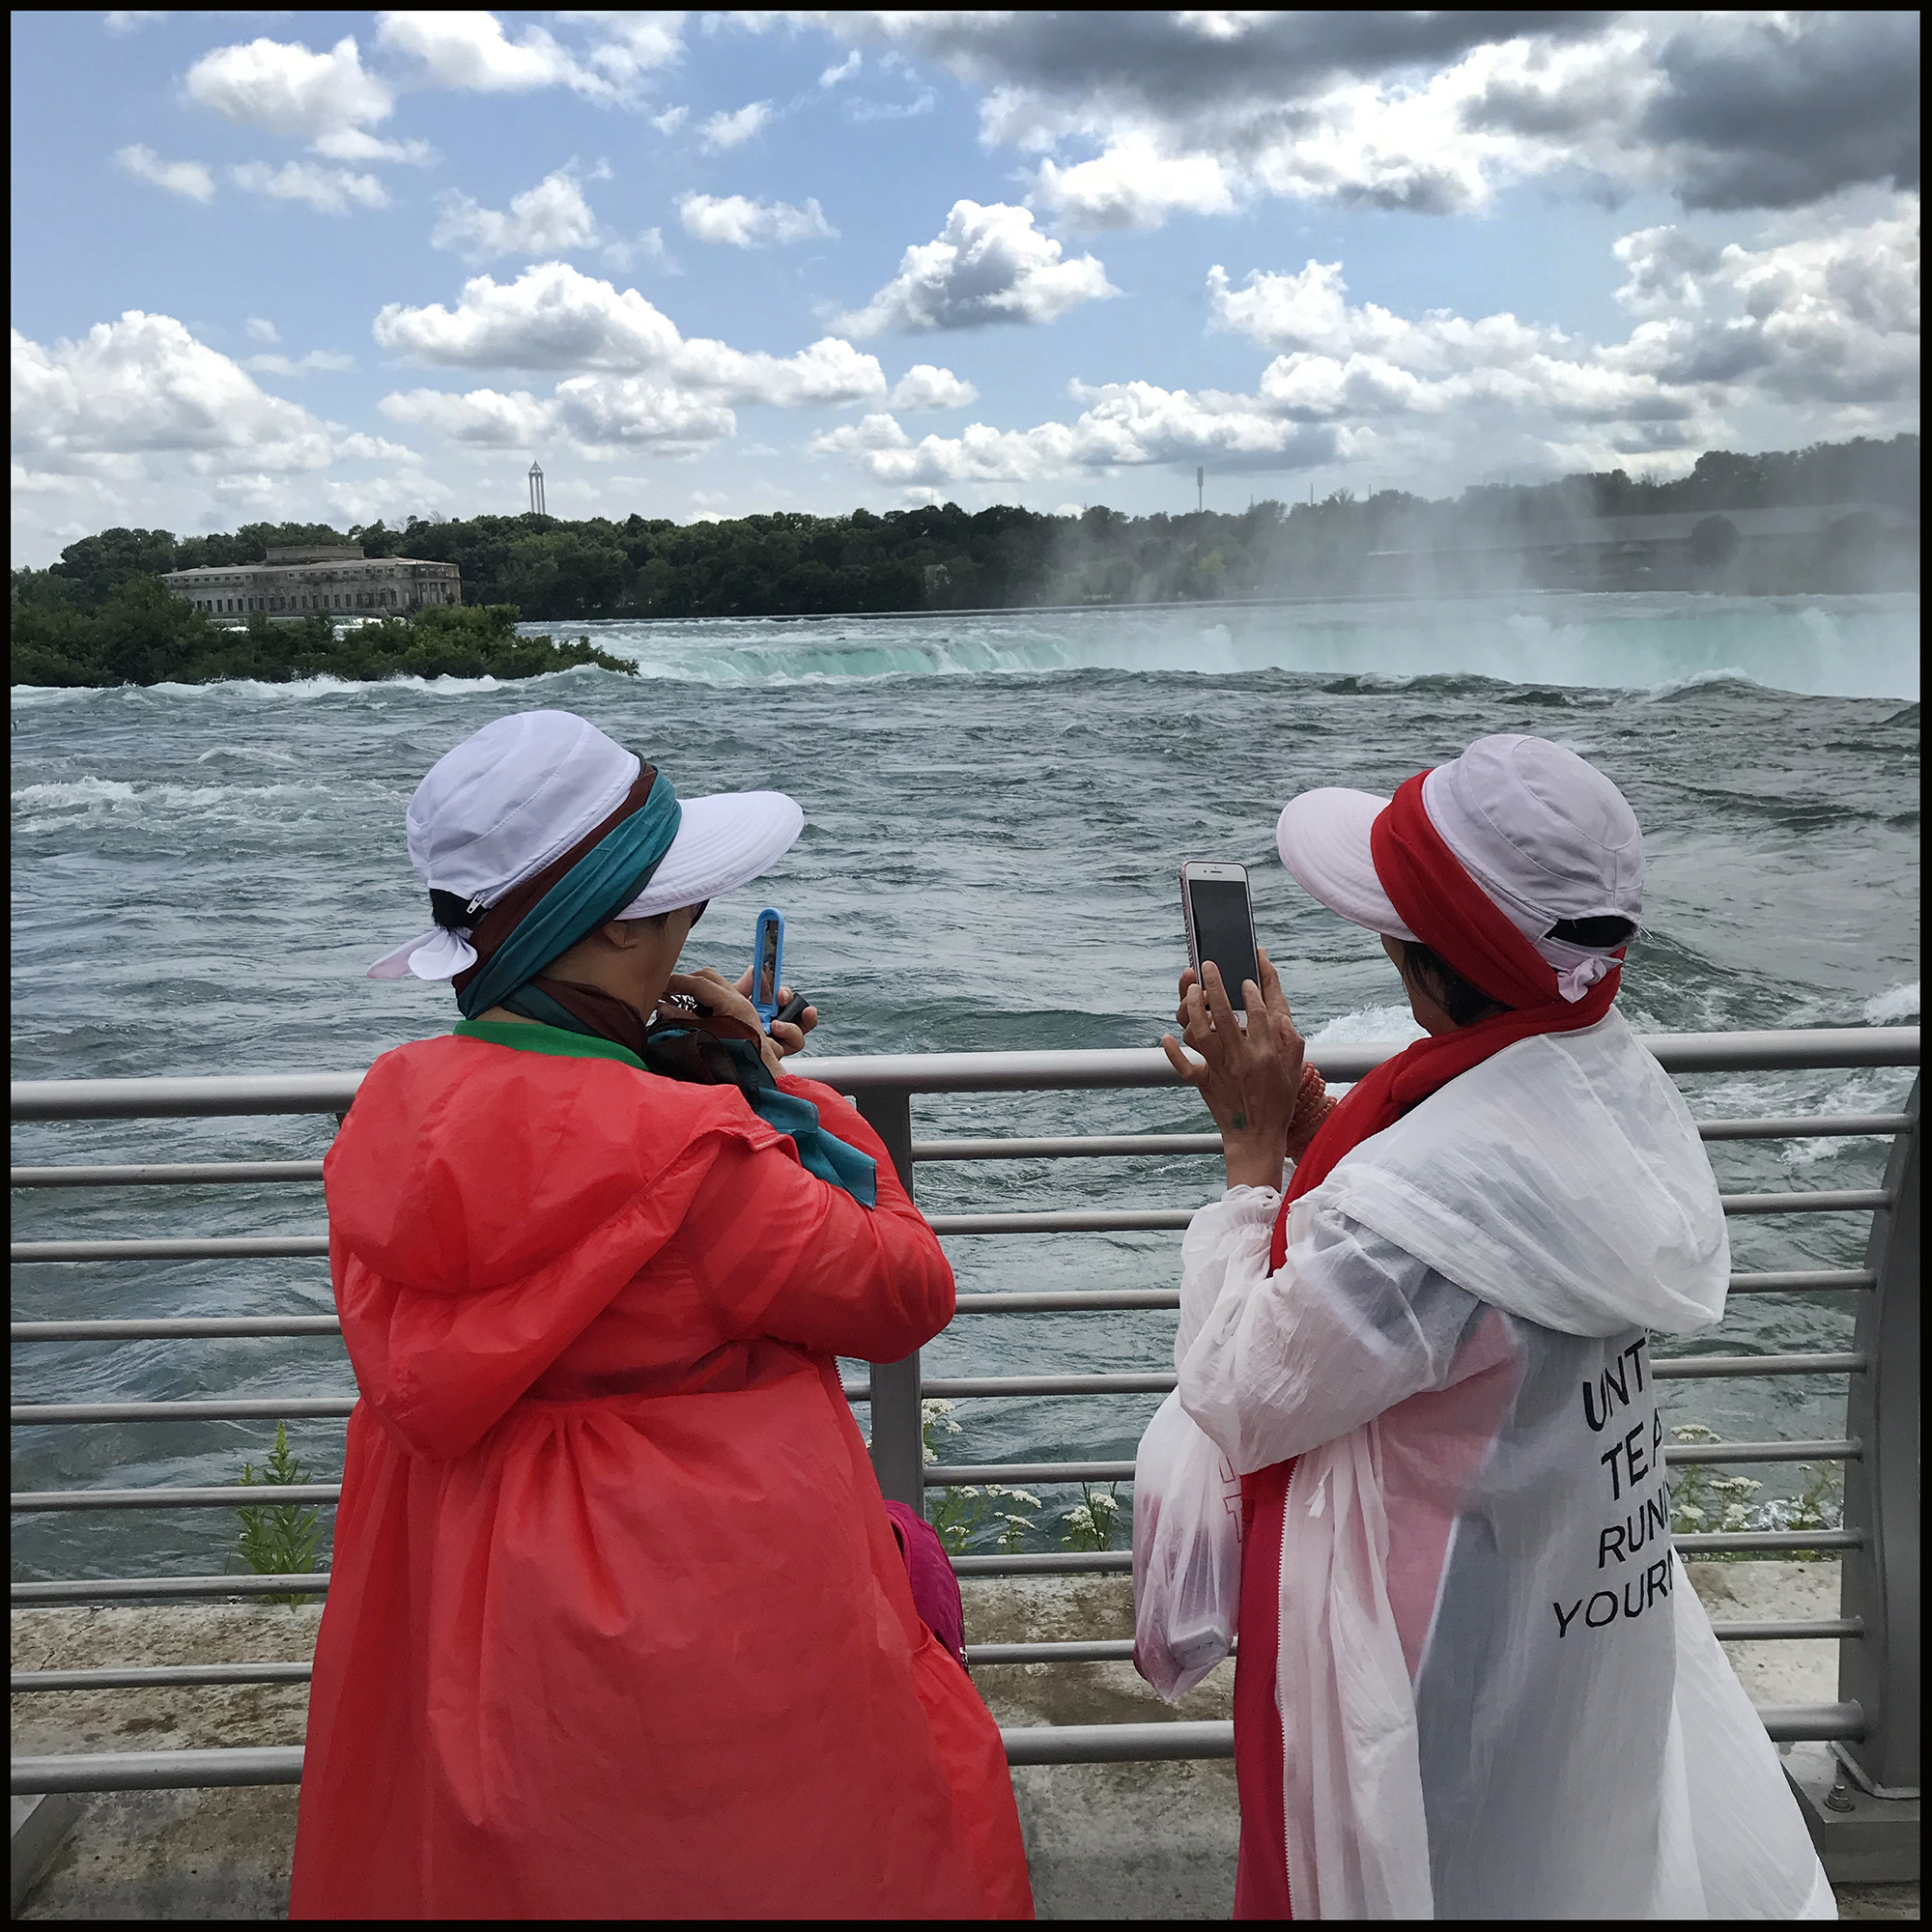 Tourists take photos at Niagara Falls.